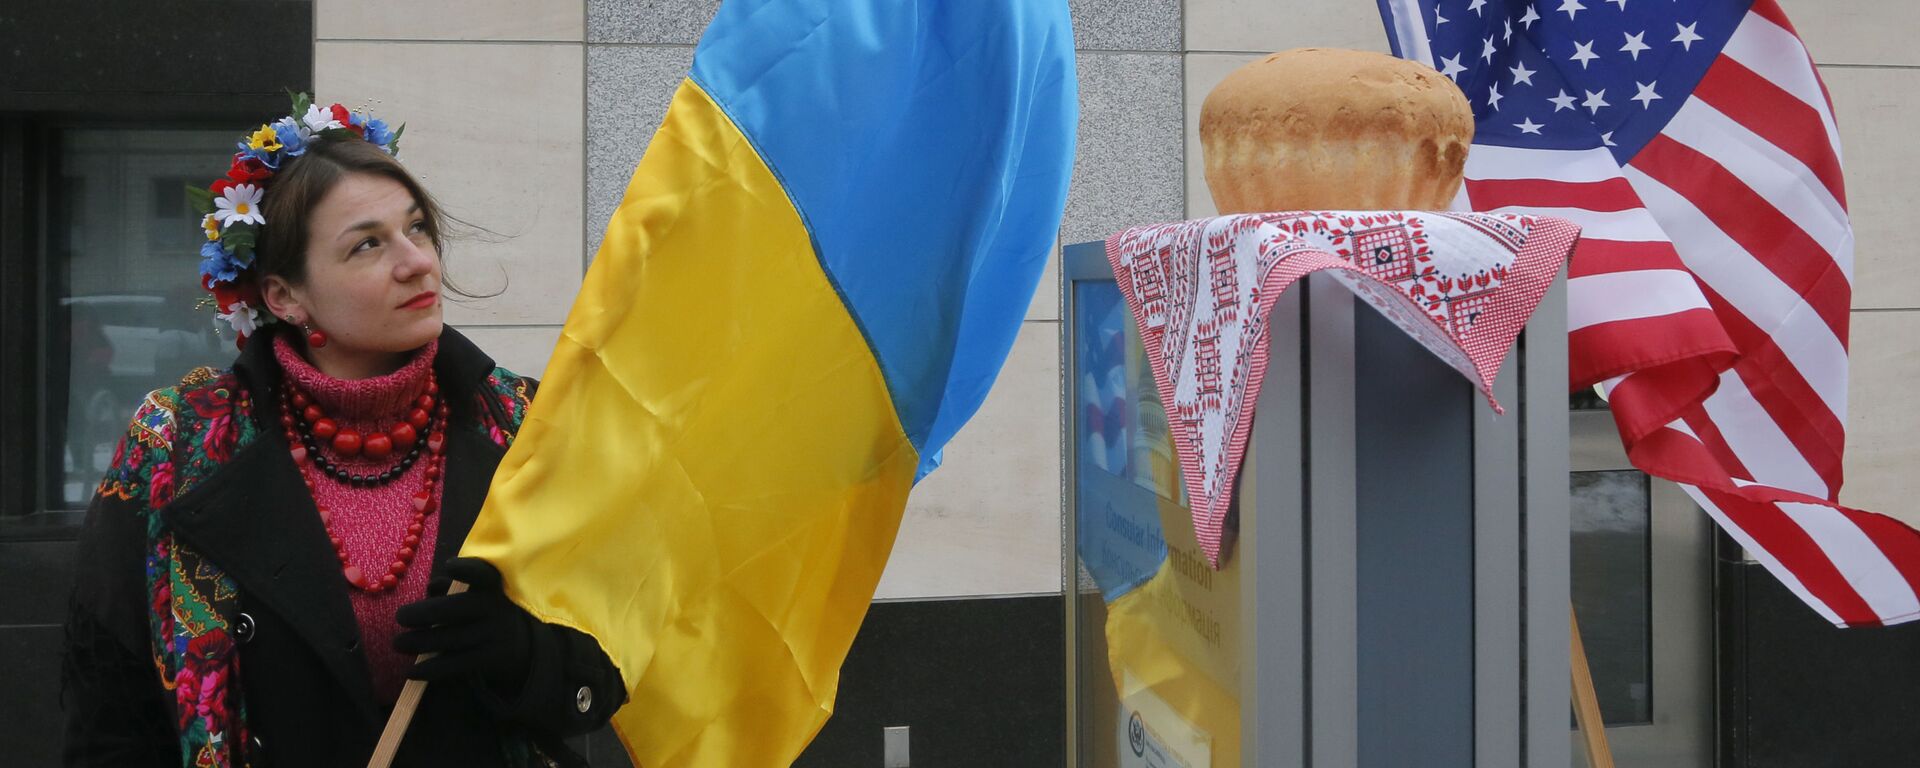 Девушка с украинским флагом у посольства США в Киеве  - Sputnik Грузия, 1920, 17.09.2021